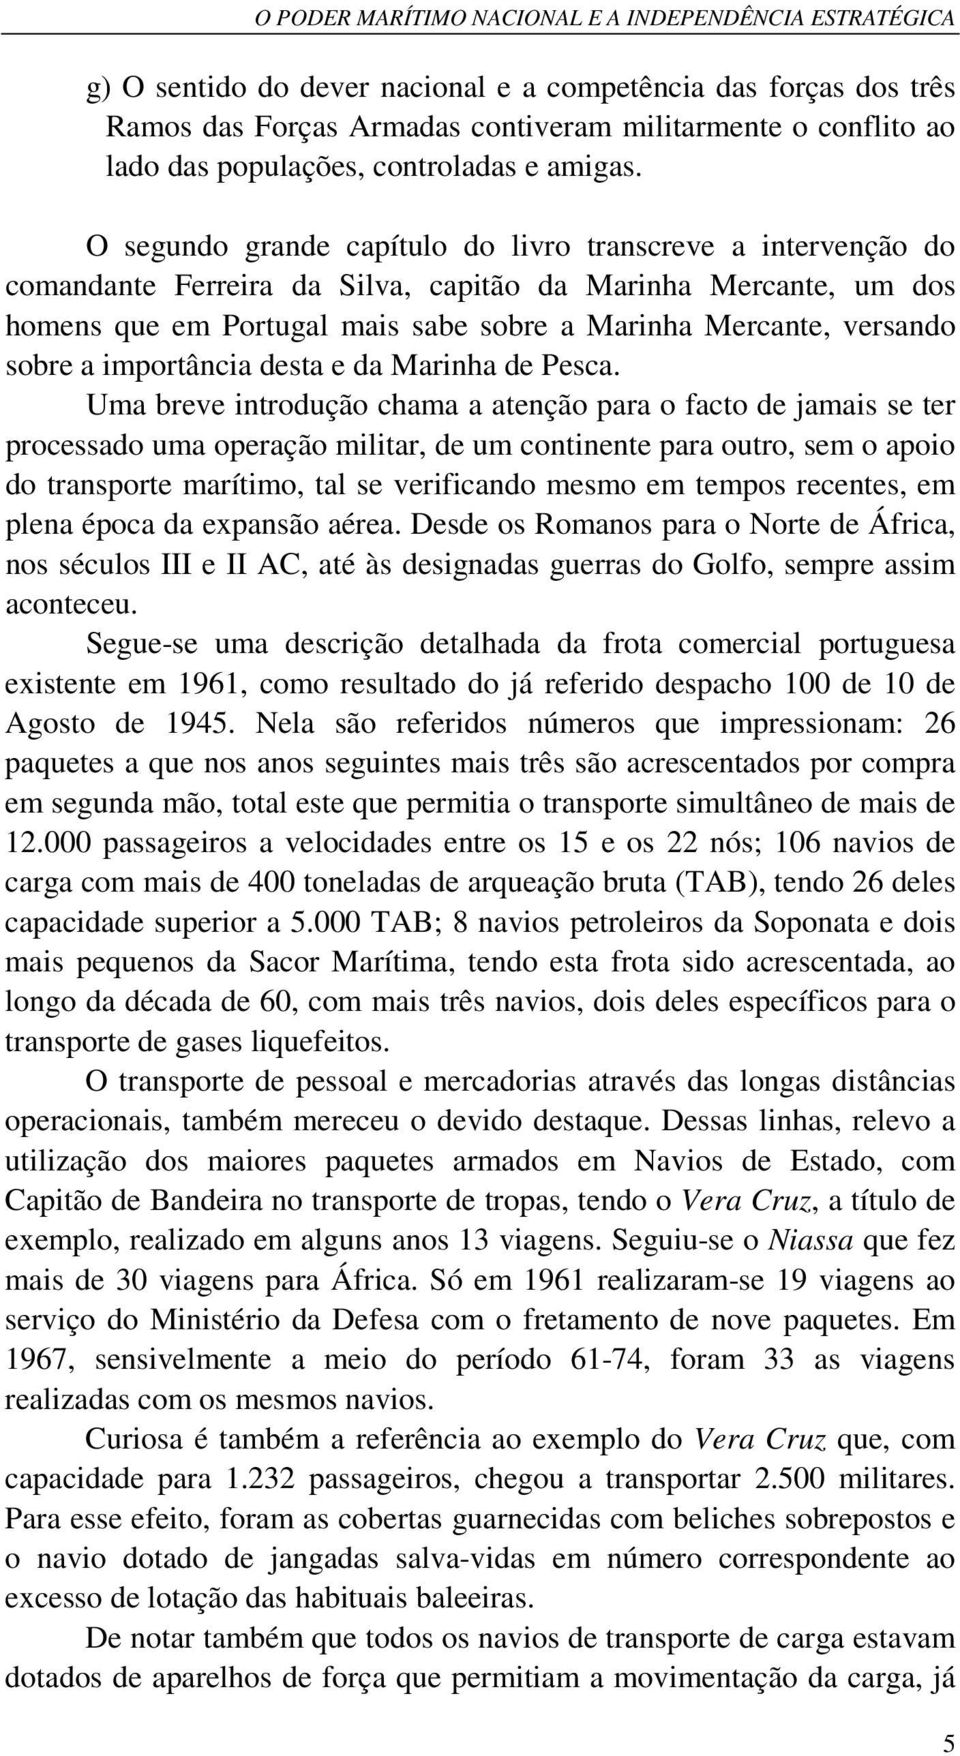 O segundo grande capítulo do livro transcreve a intervenção do comandante Ferreira da Silva, capitão da Marinha Mercante, um dos homens que em Portugal mais sabe sobre a Marinha Mercante, versando